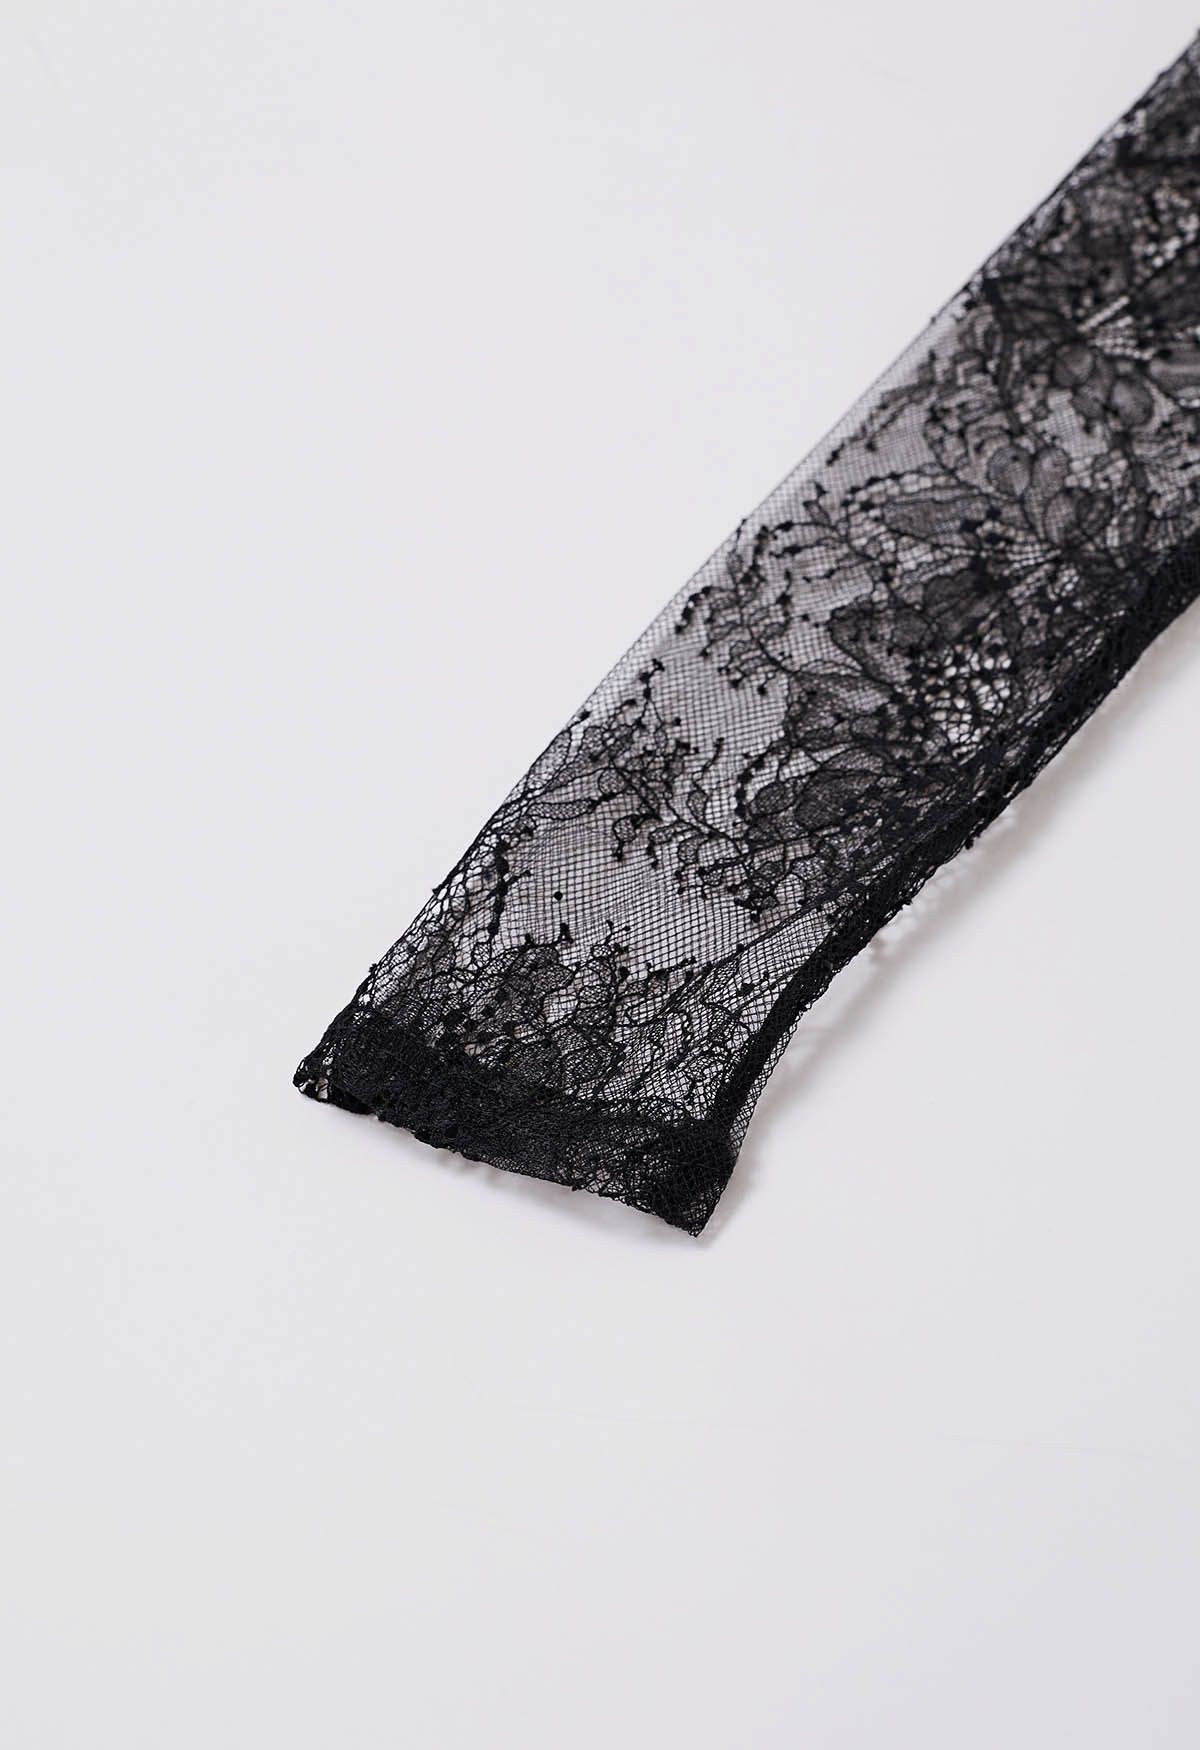 Lace Spliced Feather Trim Bodycon Midi Dress in Black